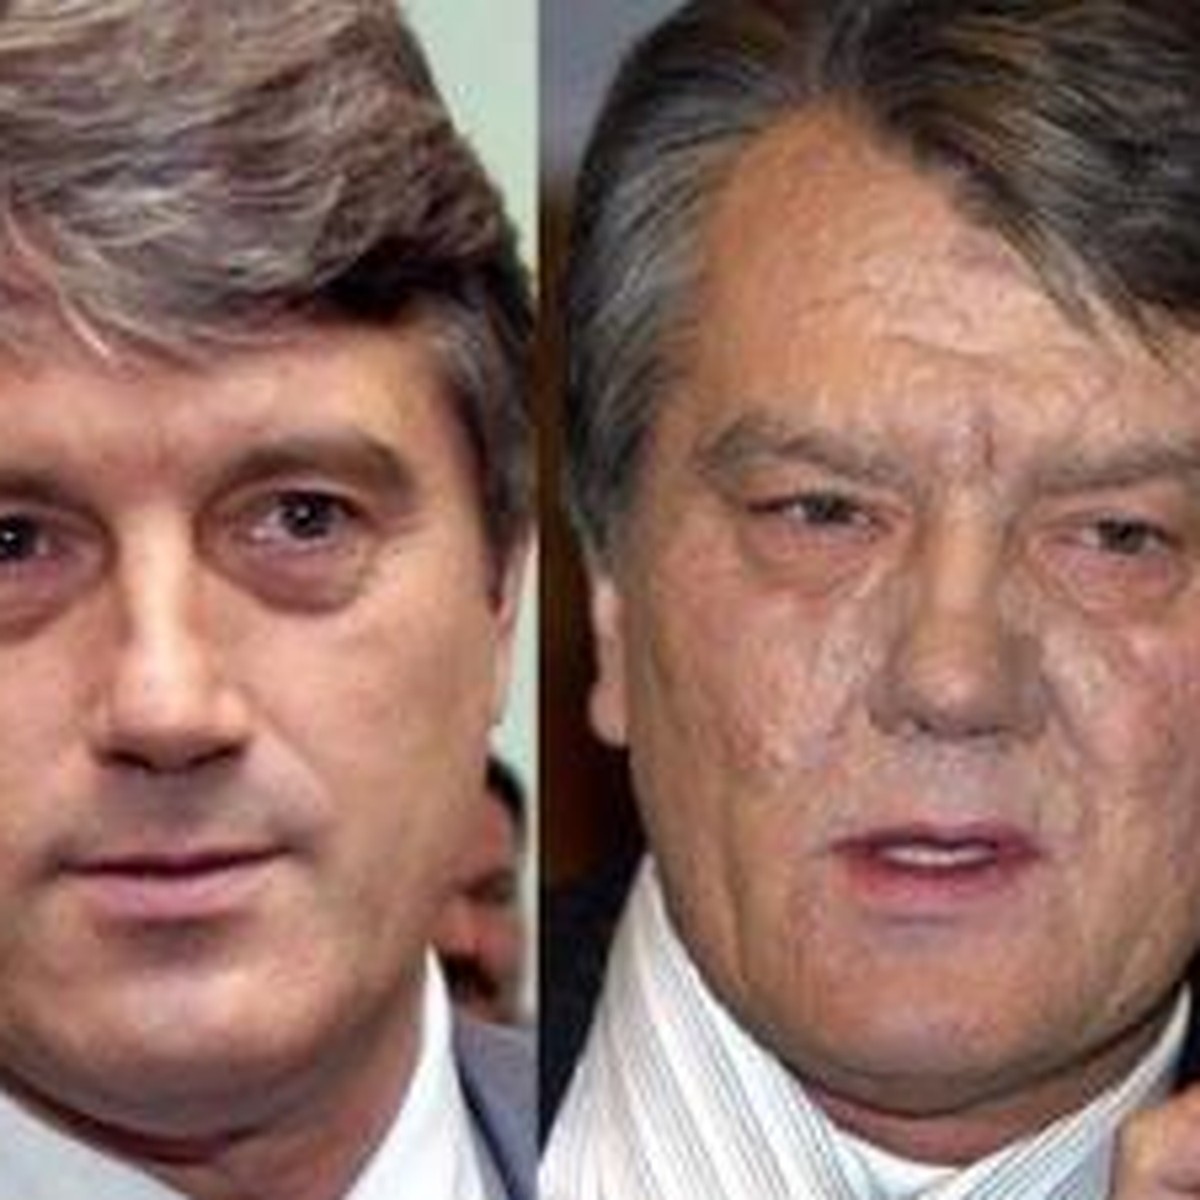 Виктор Ющенко в молодости